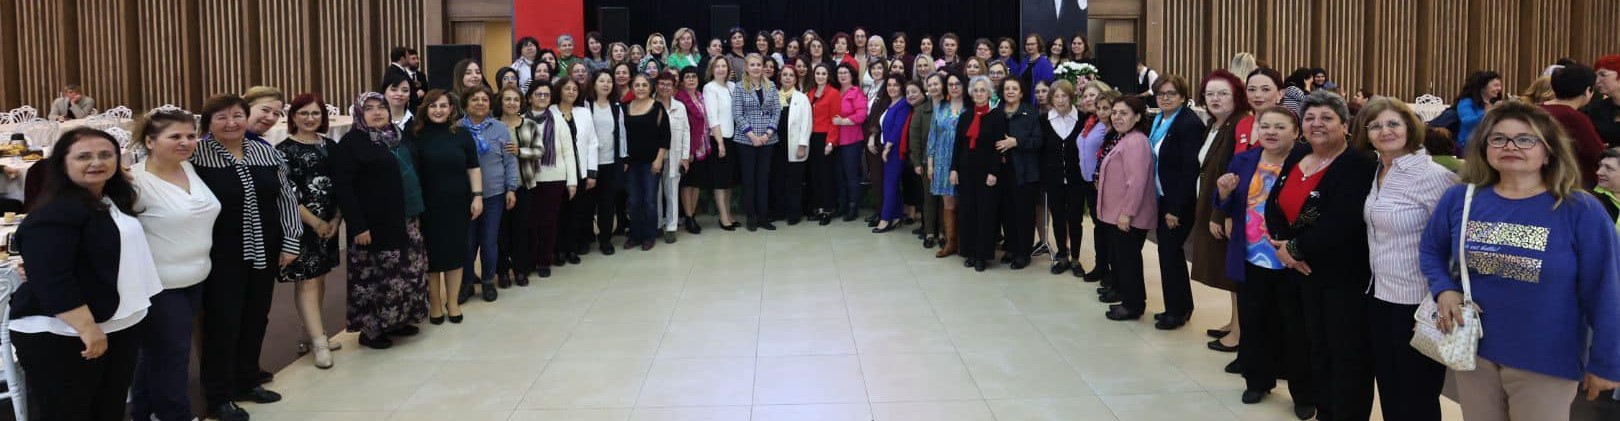 Başkan Doğan, Si̇vi̇l Toplum Kuruluşlariyla 8 Mart Kadinlar Günü’nde Bi̇r Araya Geldi̇ (5)